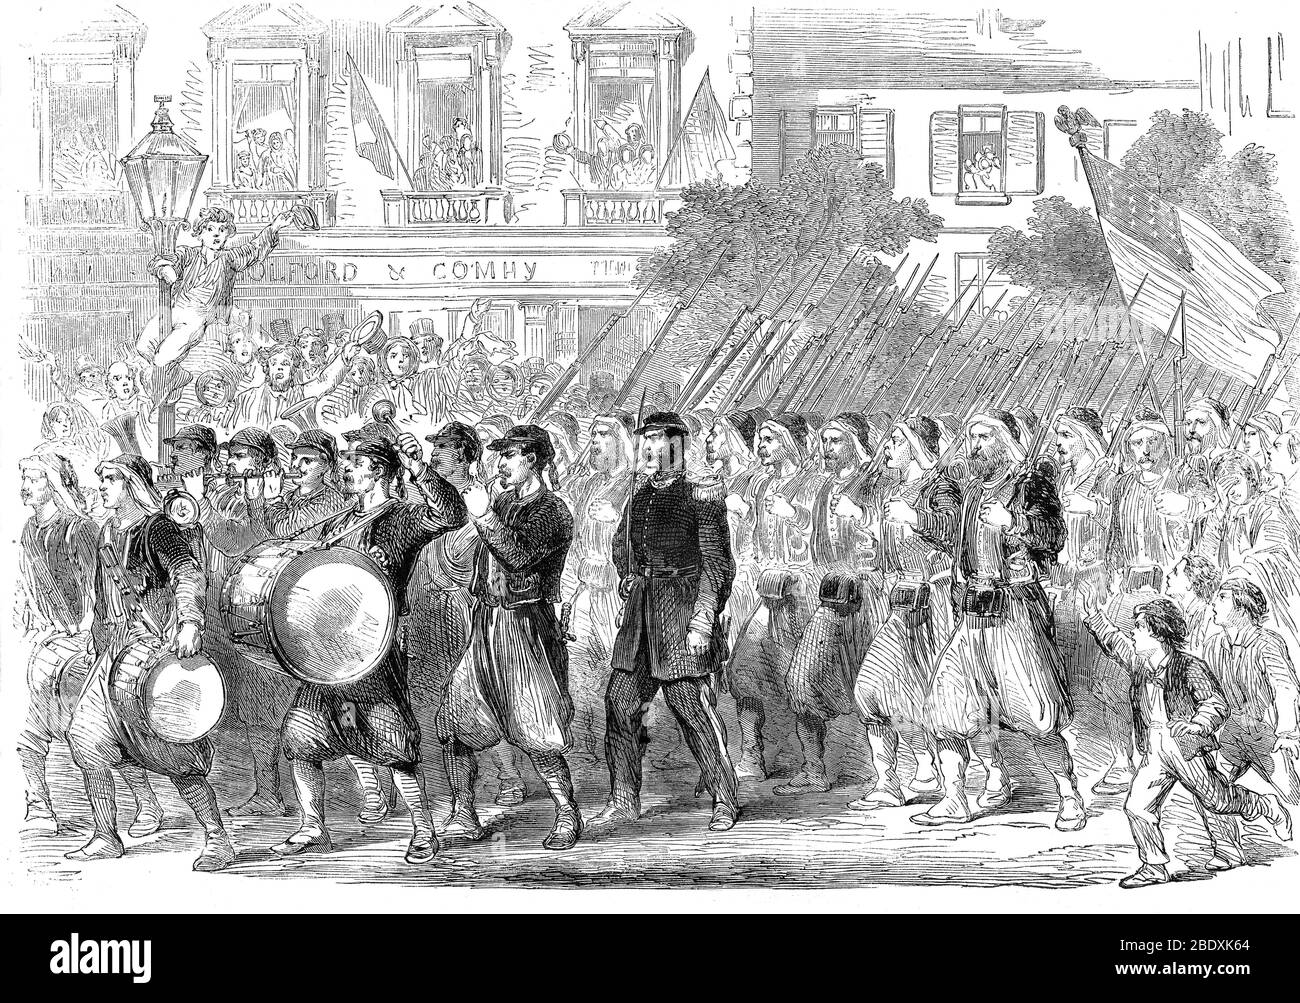 Guerre civile américaine, 5ème Régiment de New York, 1861 Banque D'Images